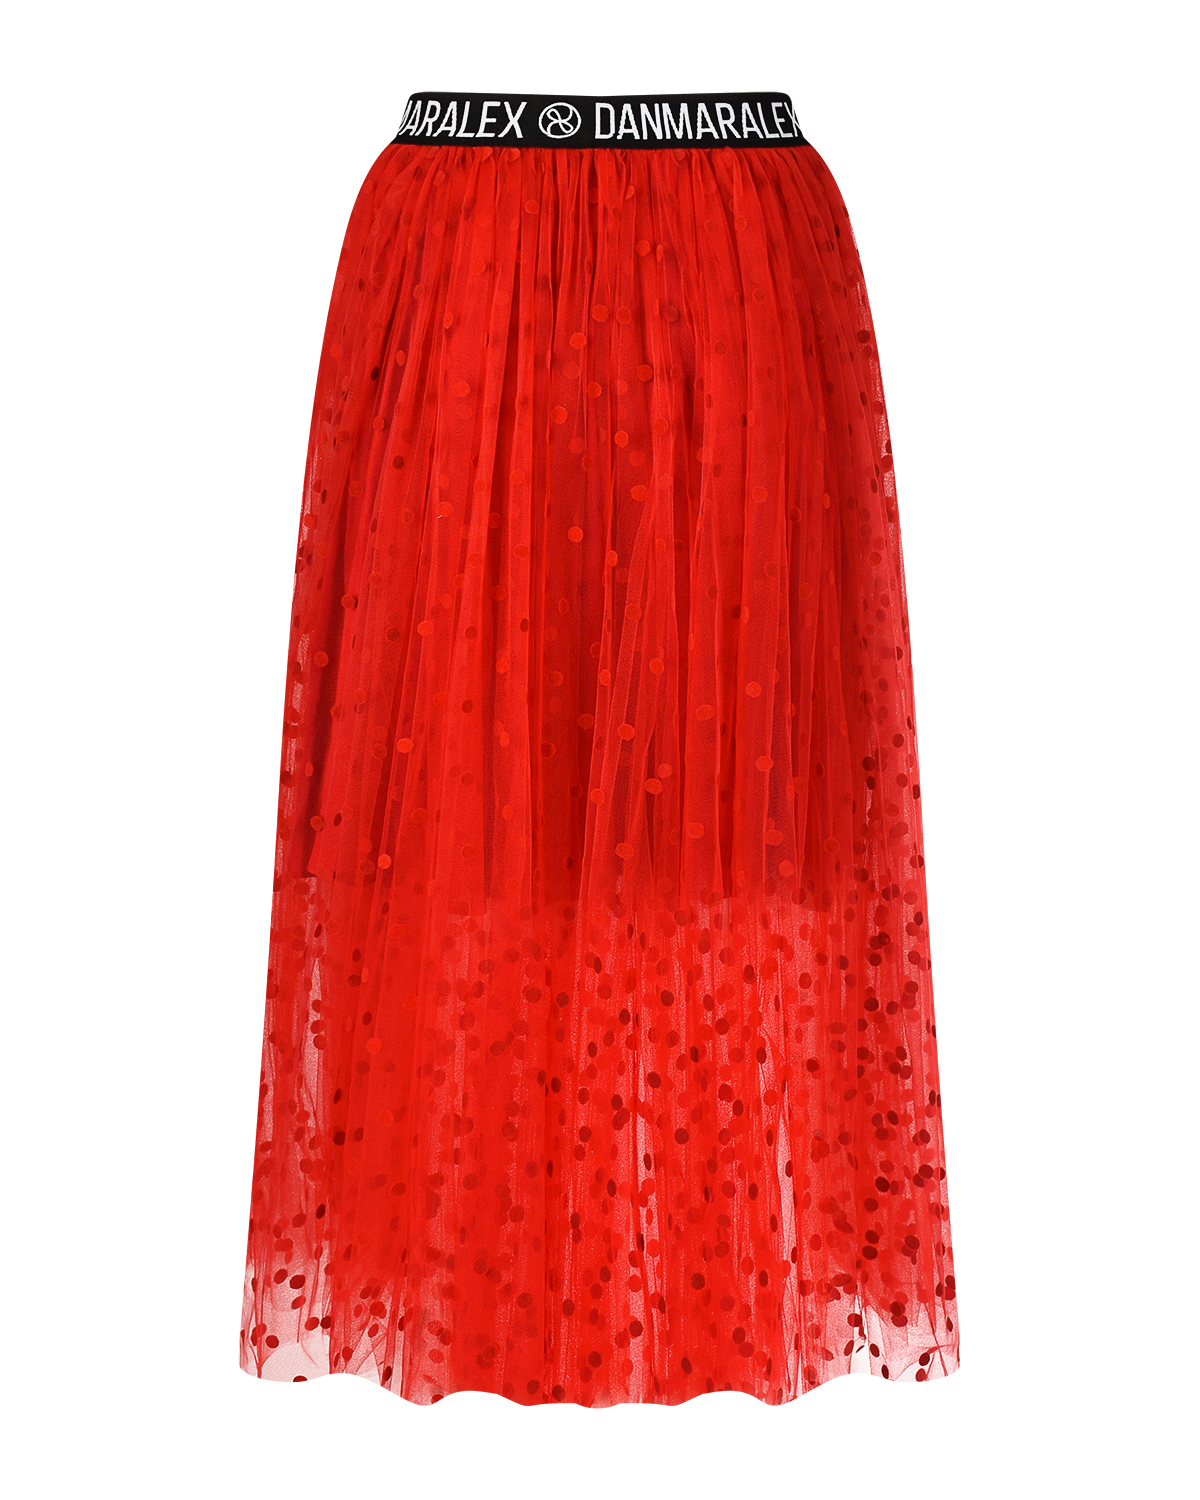 Красная юбка в горошек Dan Maralex, размер 42, цвет красный